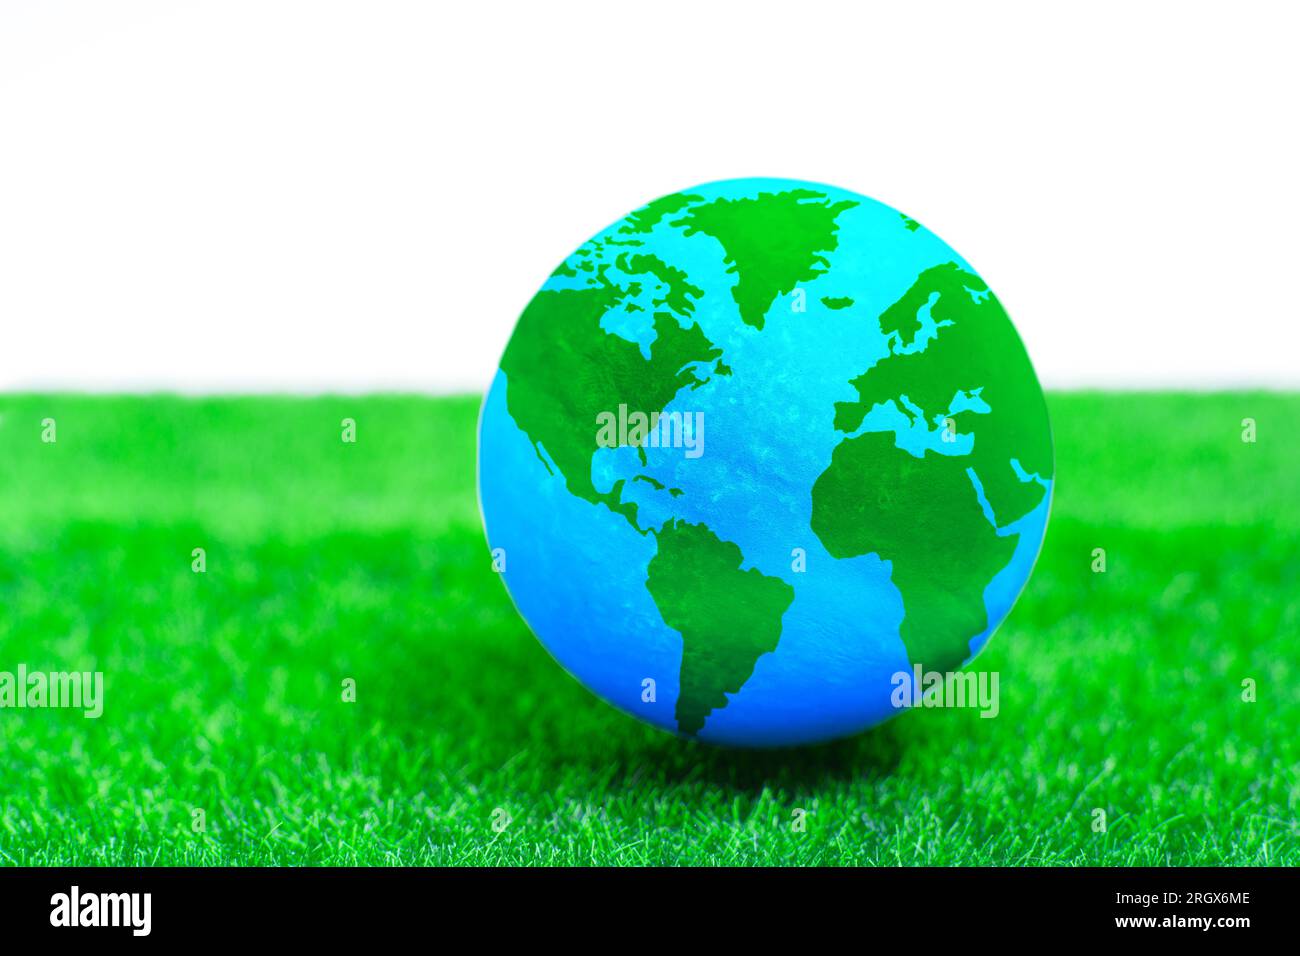 Globo in miniatura su un prato verde verdeggiante. Eco-coscienza, sviluppo sostenibile e promozione di una responsabilità condivisa per il bene della Terra Foto Stock